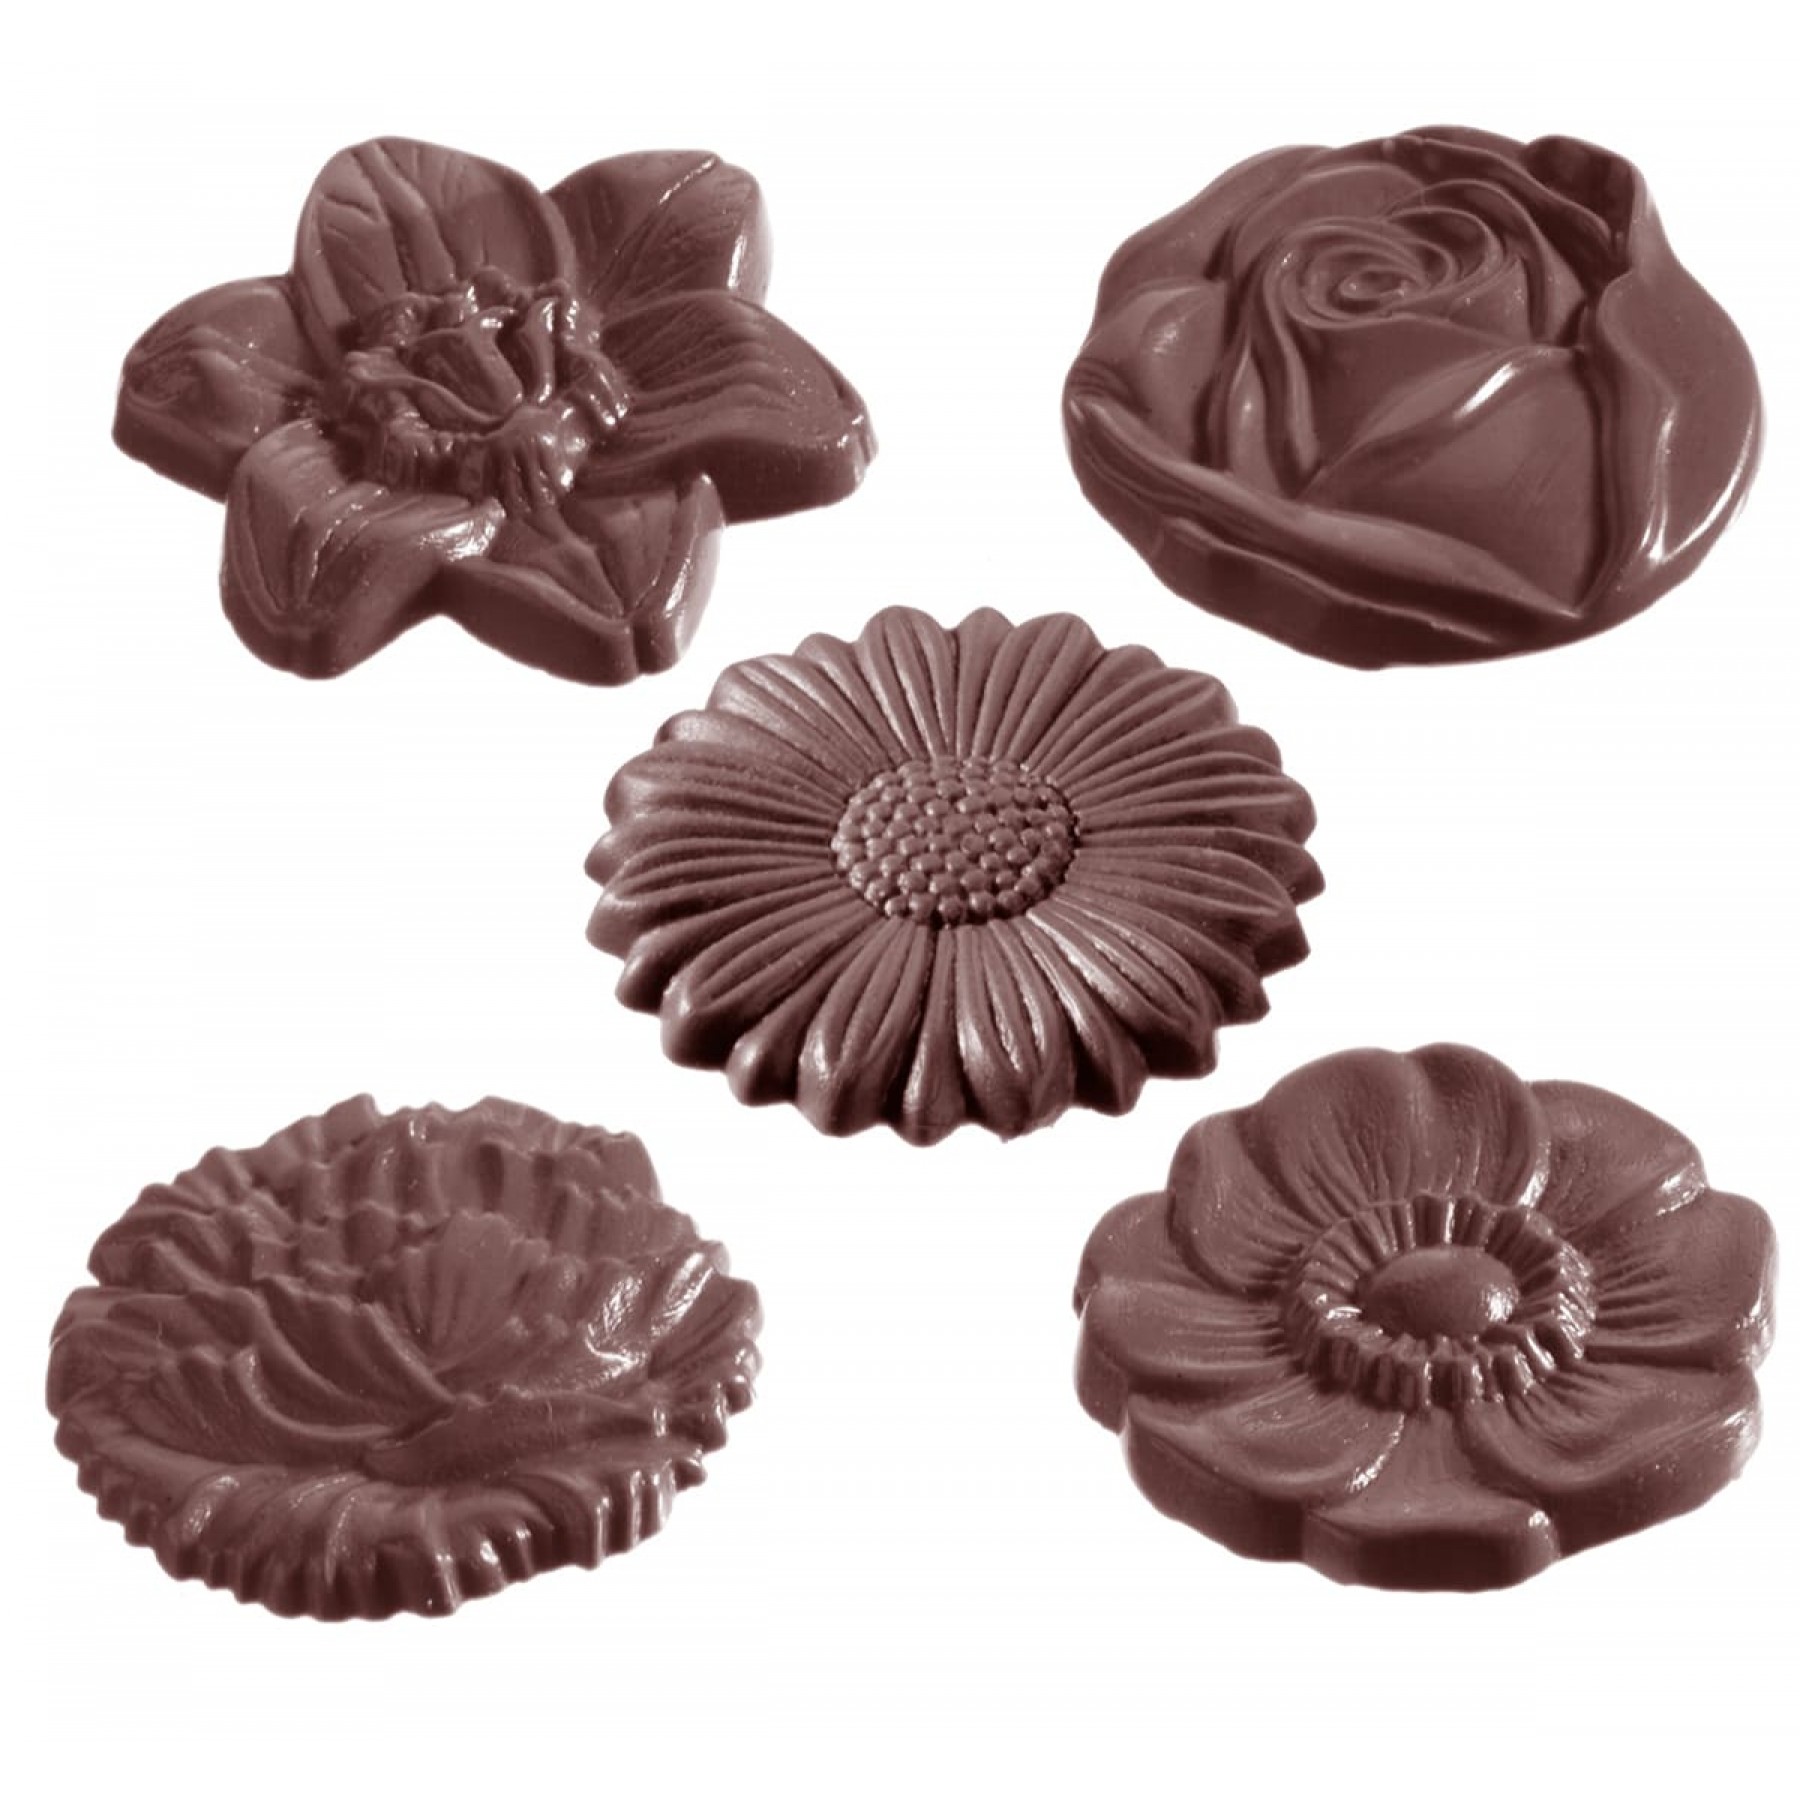 Шоколадные формы купить. Форма поликарбонатная розы chocolateworld (Бельгия). Поликарбонатные формы для шоколада Chocolate World. Формы для конфет поликарбонат Chocolate World. Шоколадные цветы.